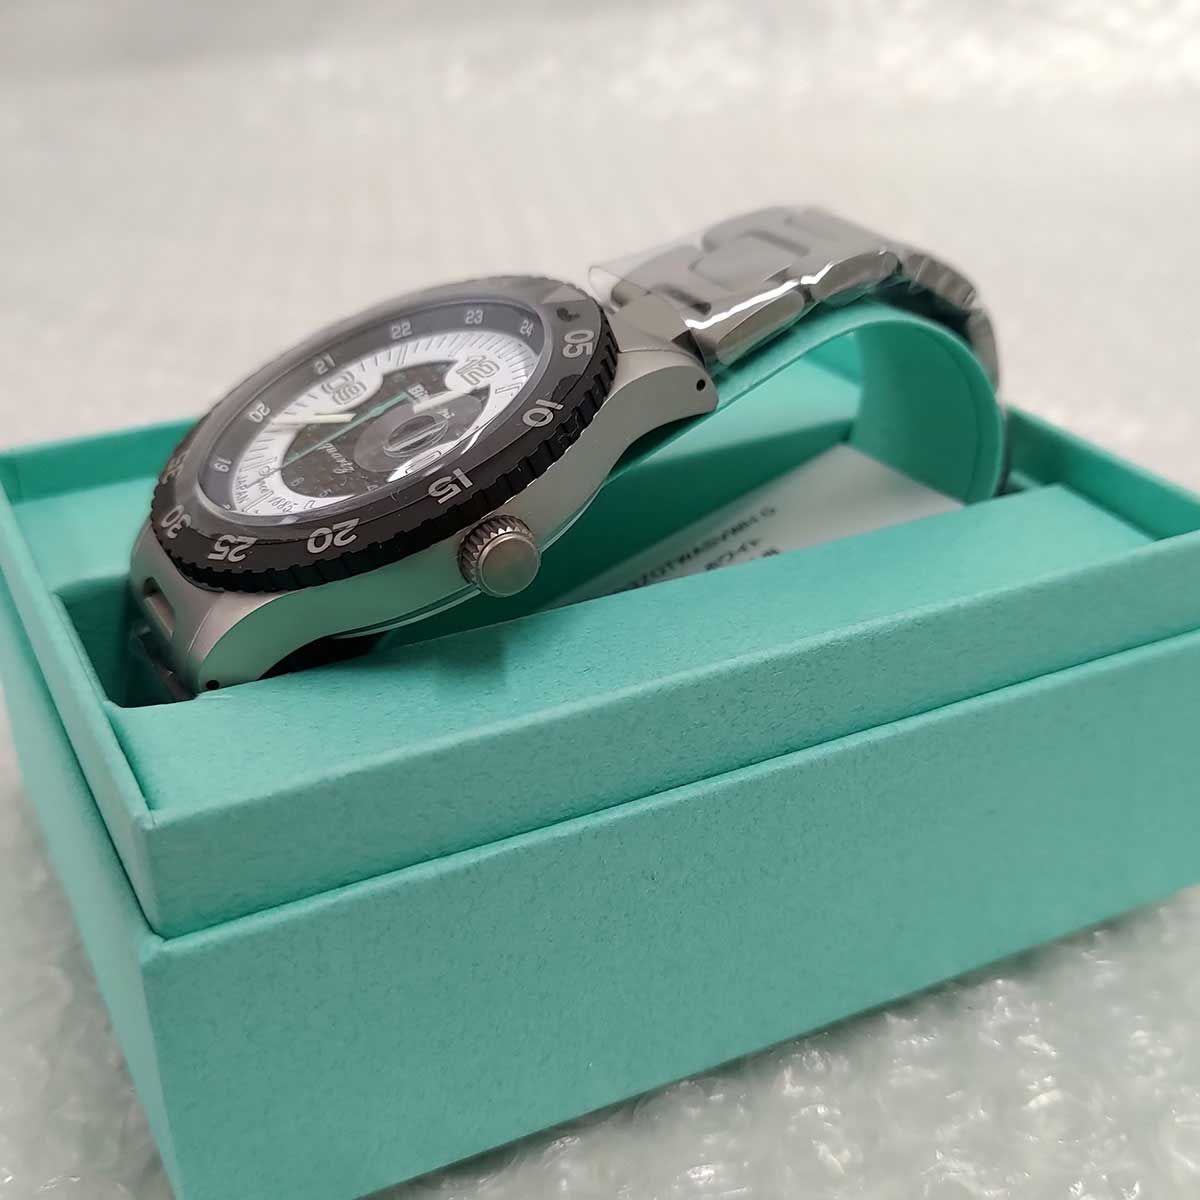 最終値下げ 新品 ビアンキ JP203ZOTWA ダイバーズウオッチ型 腕時計 - 時計